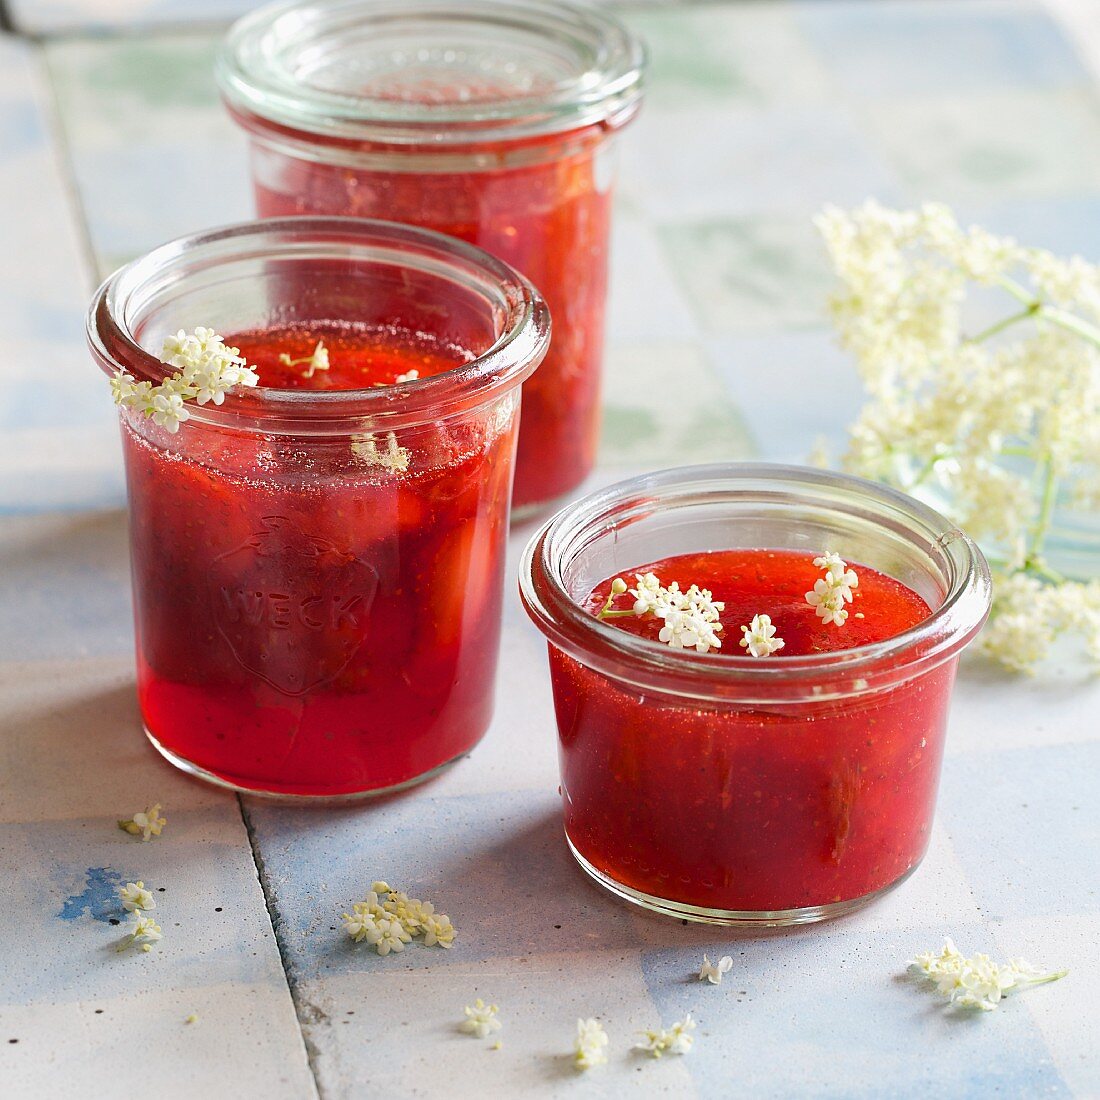 Homemade strawberry jam with elderflowers